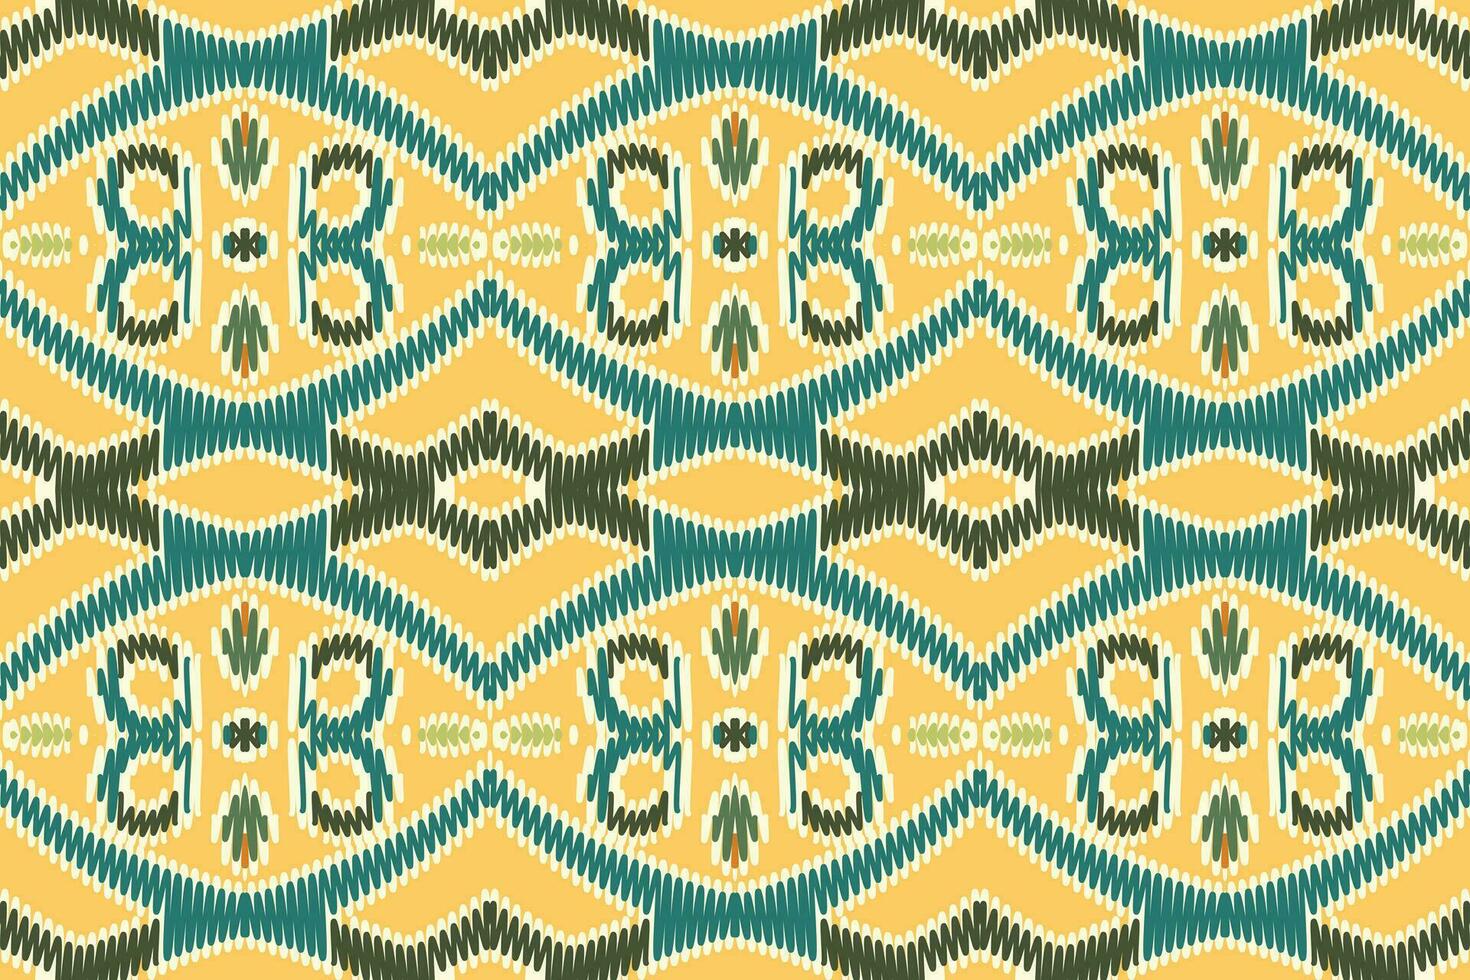 nordic patroon naadloos Scandinavisch patroon motief borduurwerk, ikat borduurwerk vector ontwerp voor afdrukken tapijtwerk bloemen kimono herhaling patroon vetersluiting Spaans motief